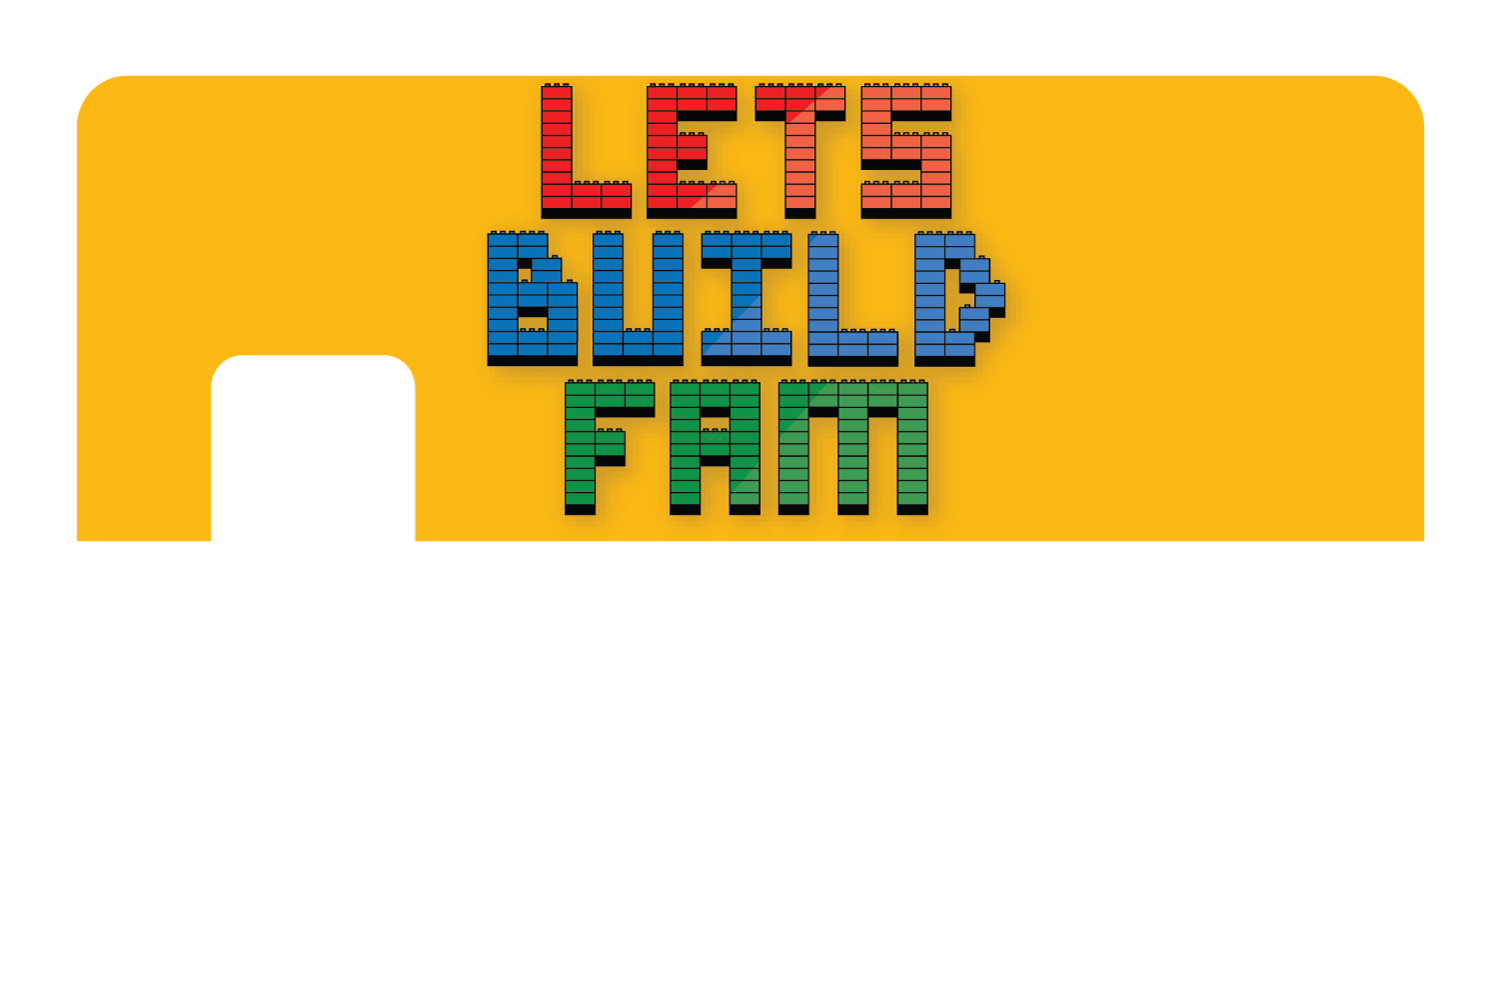 Lets Build